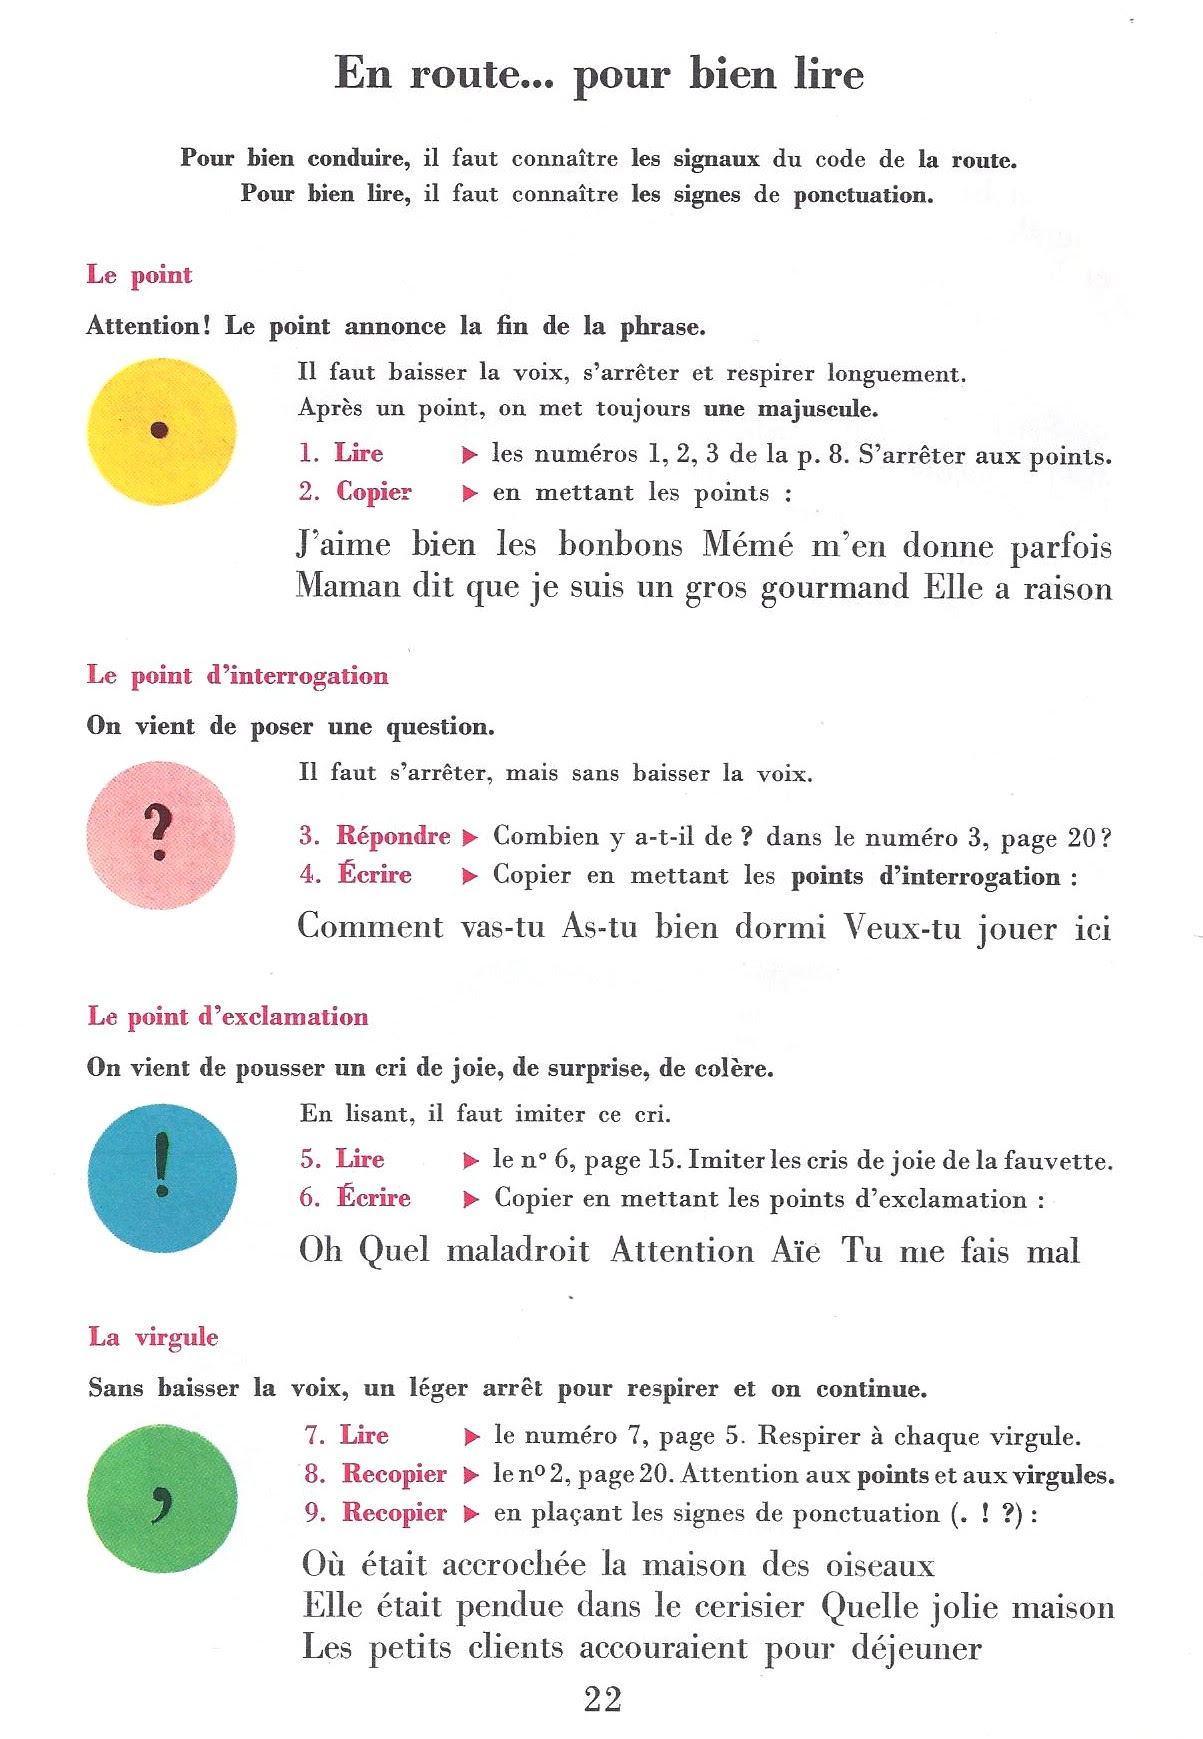 Znaki interpunkcyjne - gramatyka 4 - Francuski przy kawie